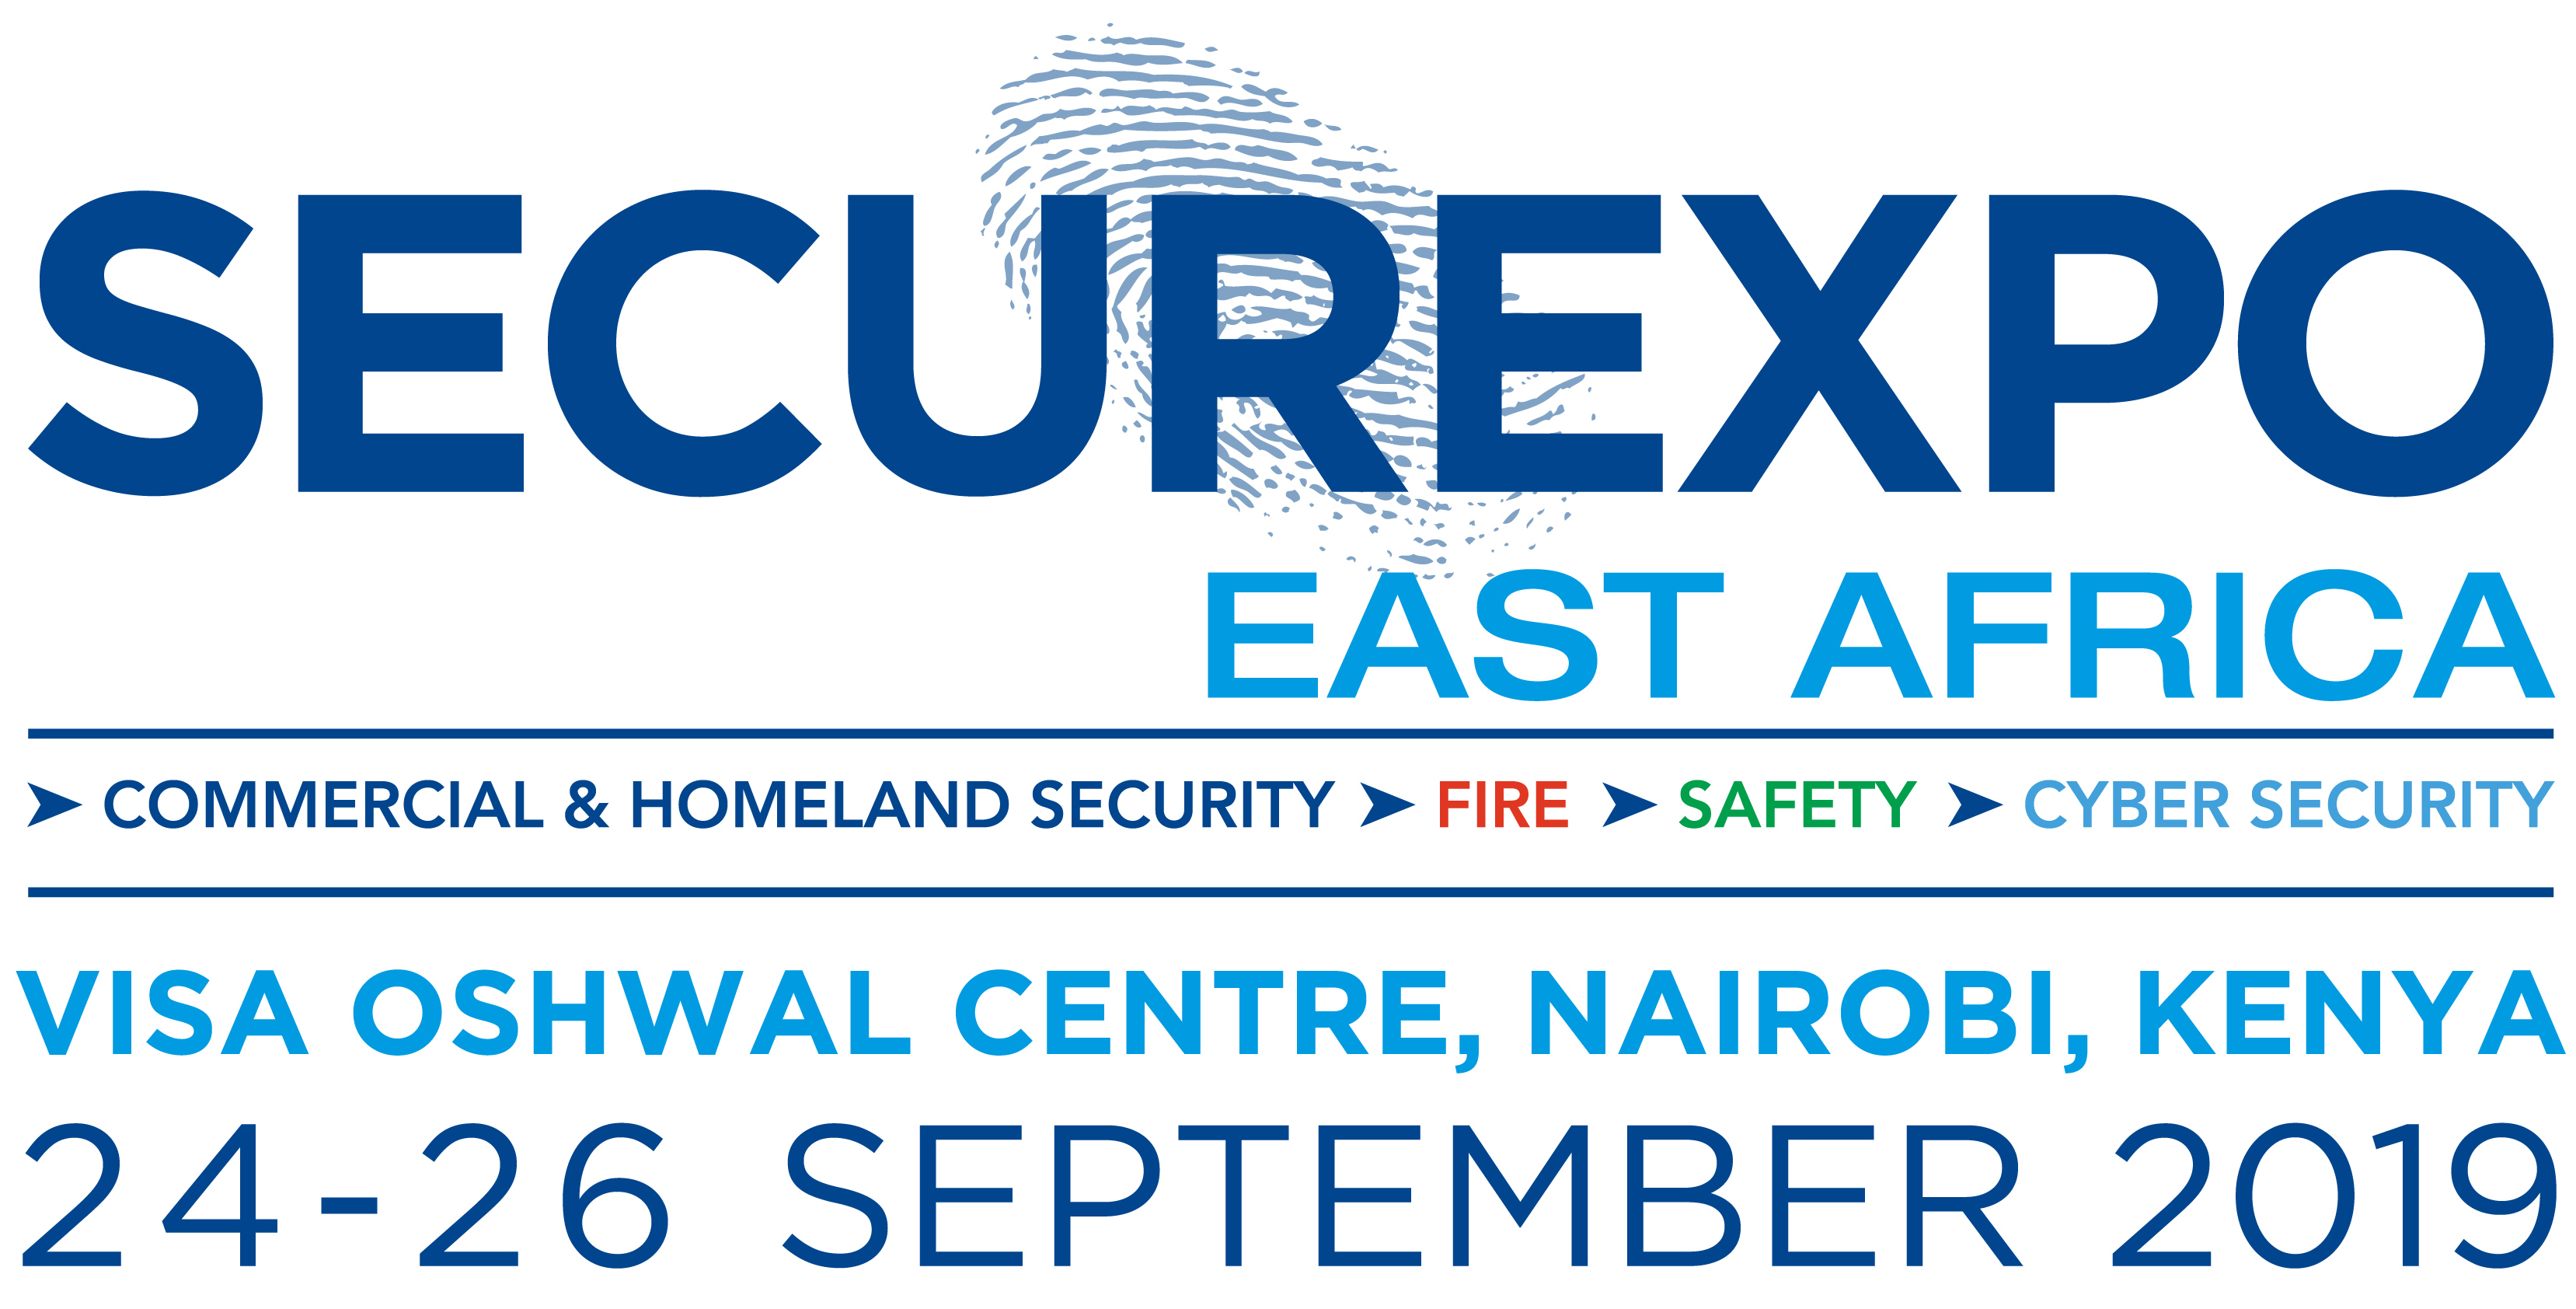 Securexpo East Africa Nairobi 2019 Uluslararası Güvenlik, Afet Kontrol Fuarı